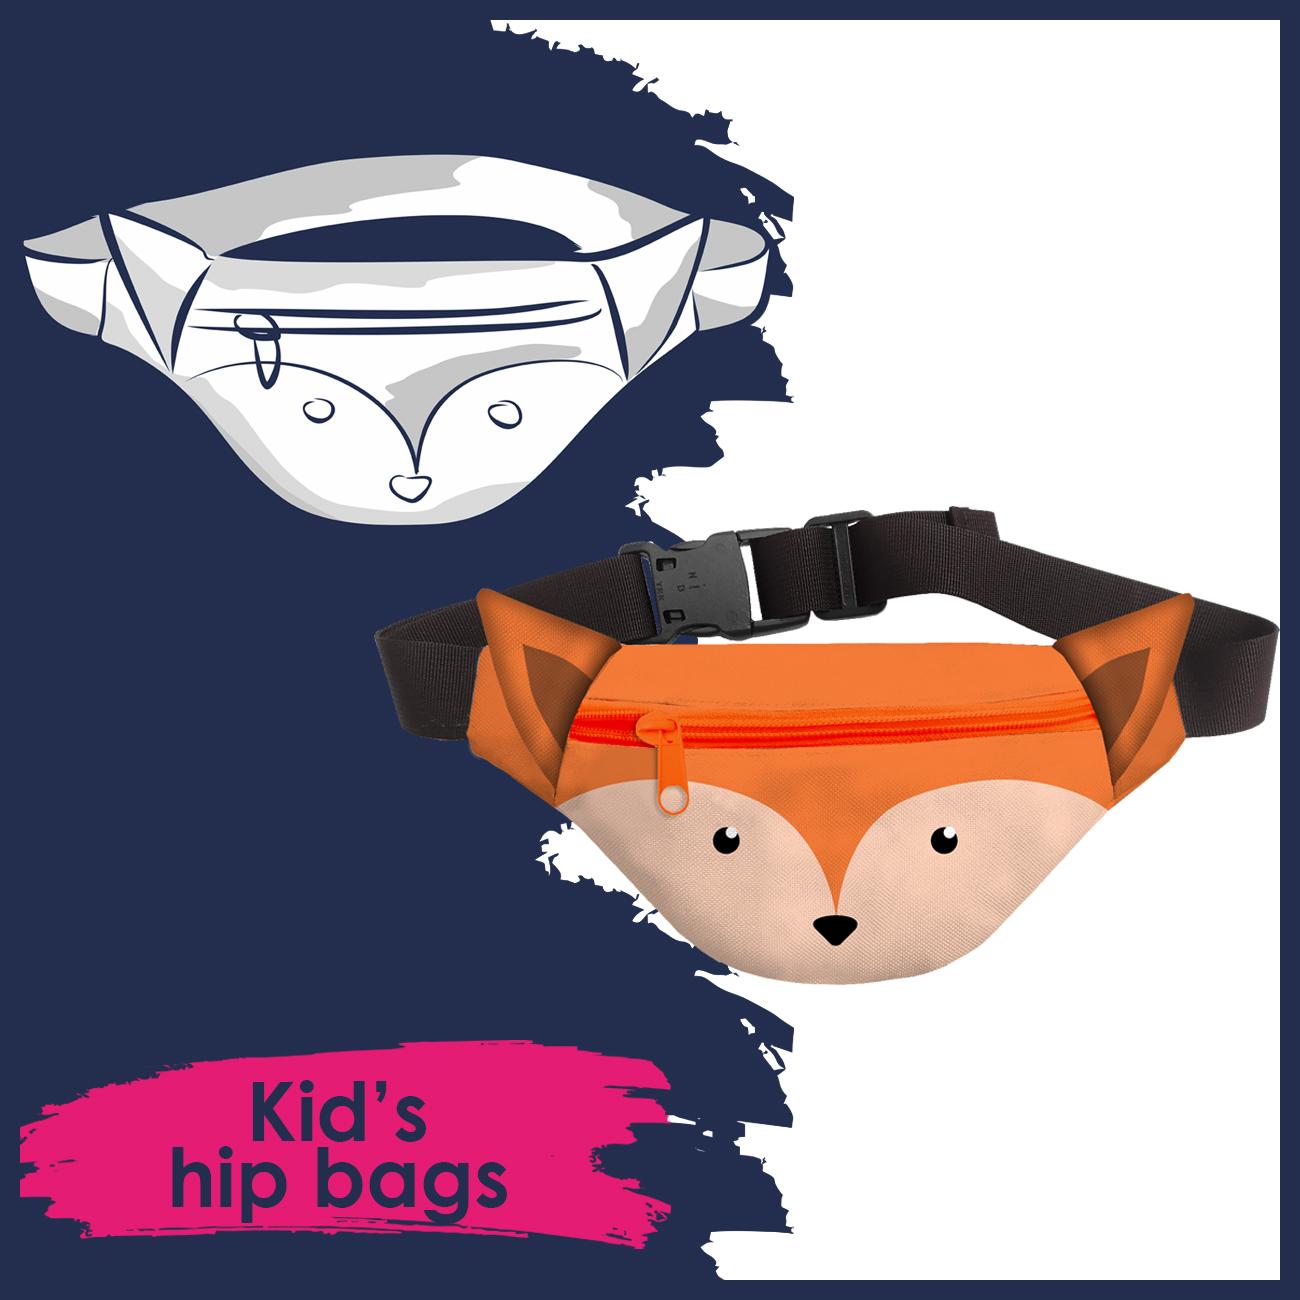 Kid's hip bags